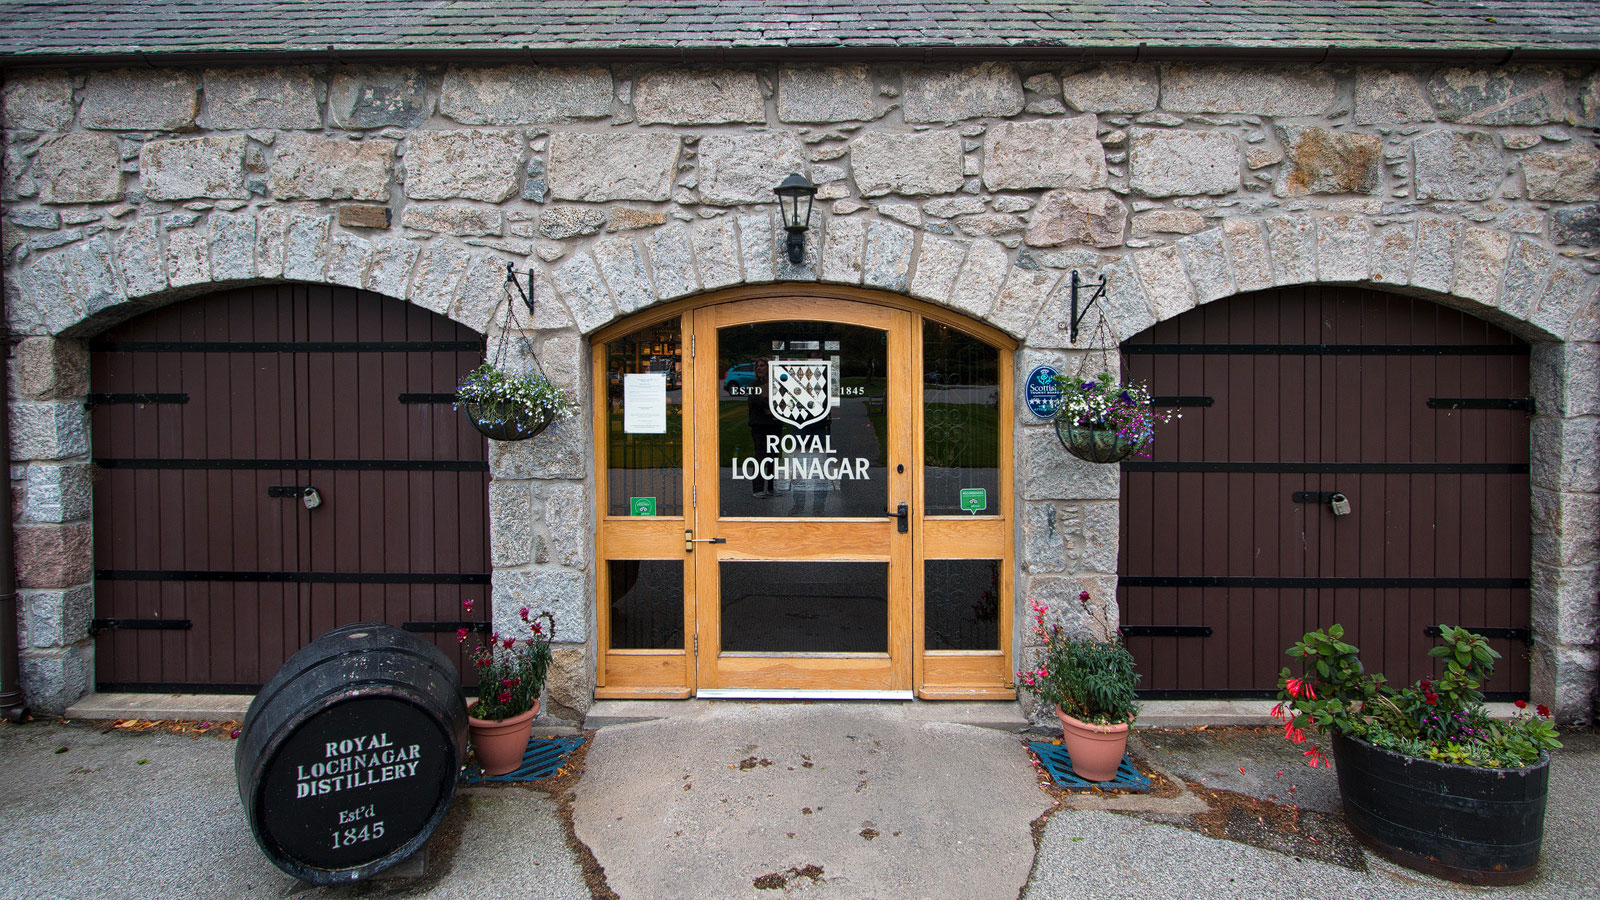 Royal Lochnagar Distillery